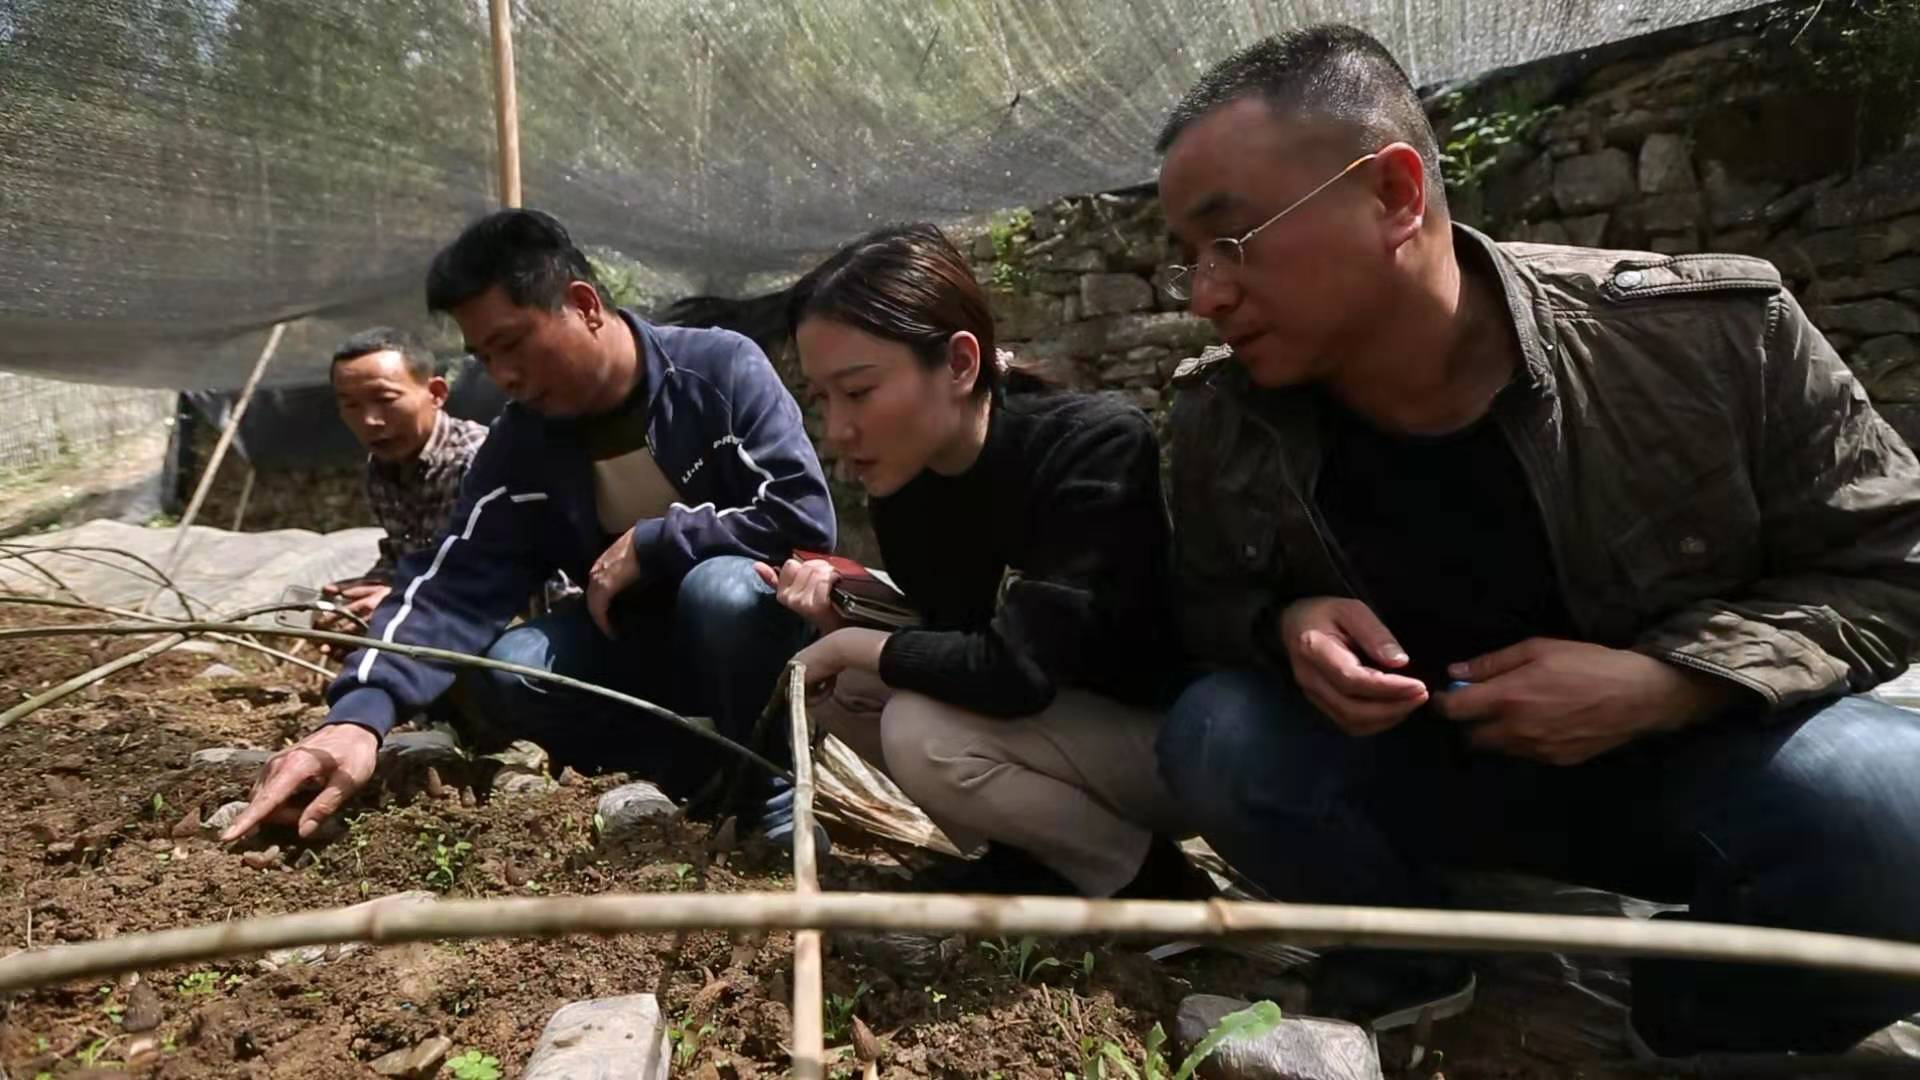 芙蓉区驻靛房镇扶贫队的几位队员和彭英龙（左一）一起查看羊肚菌生长情况。 均为受访者供图